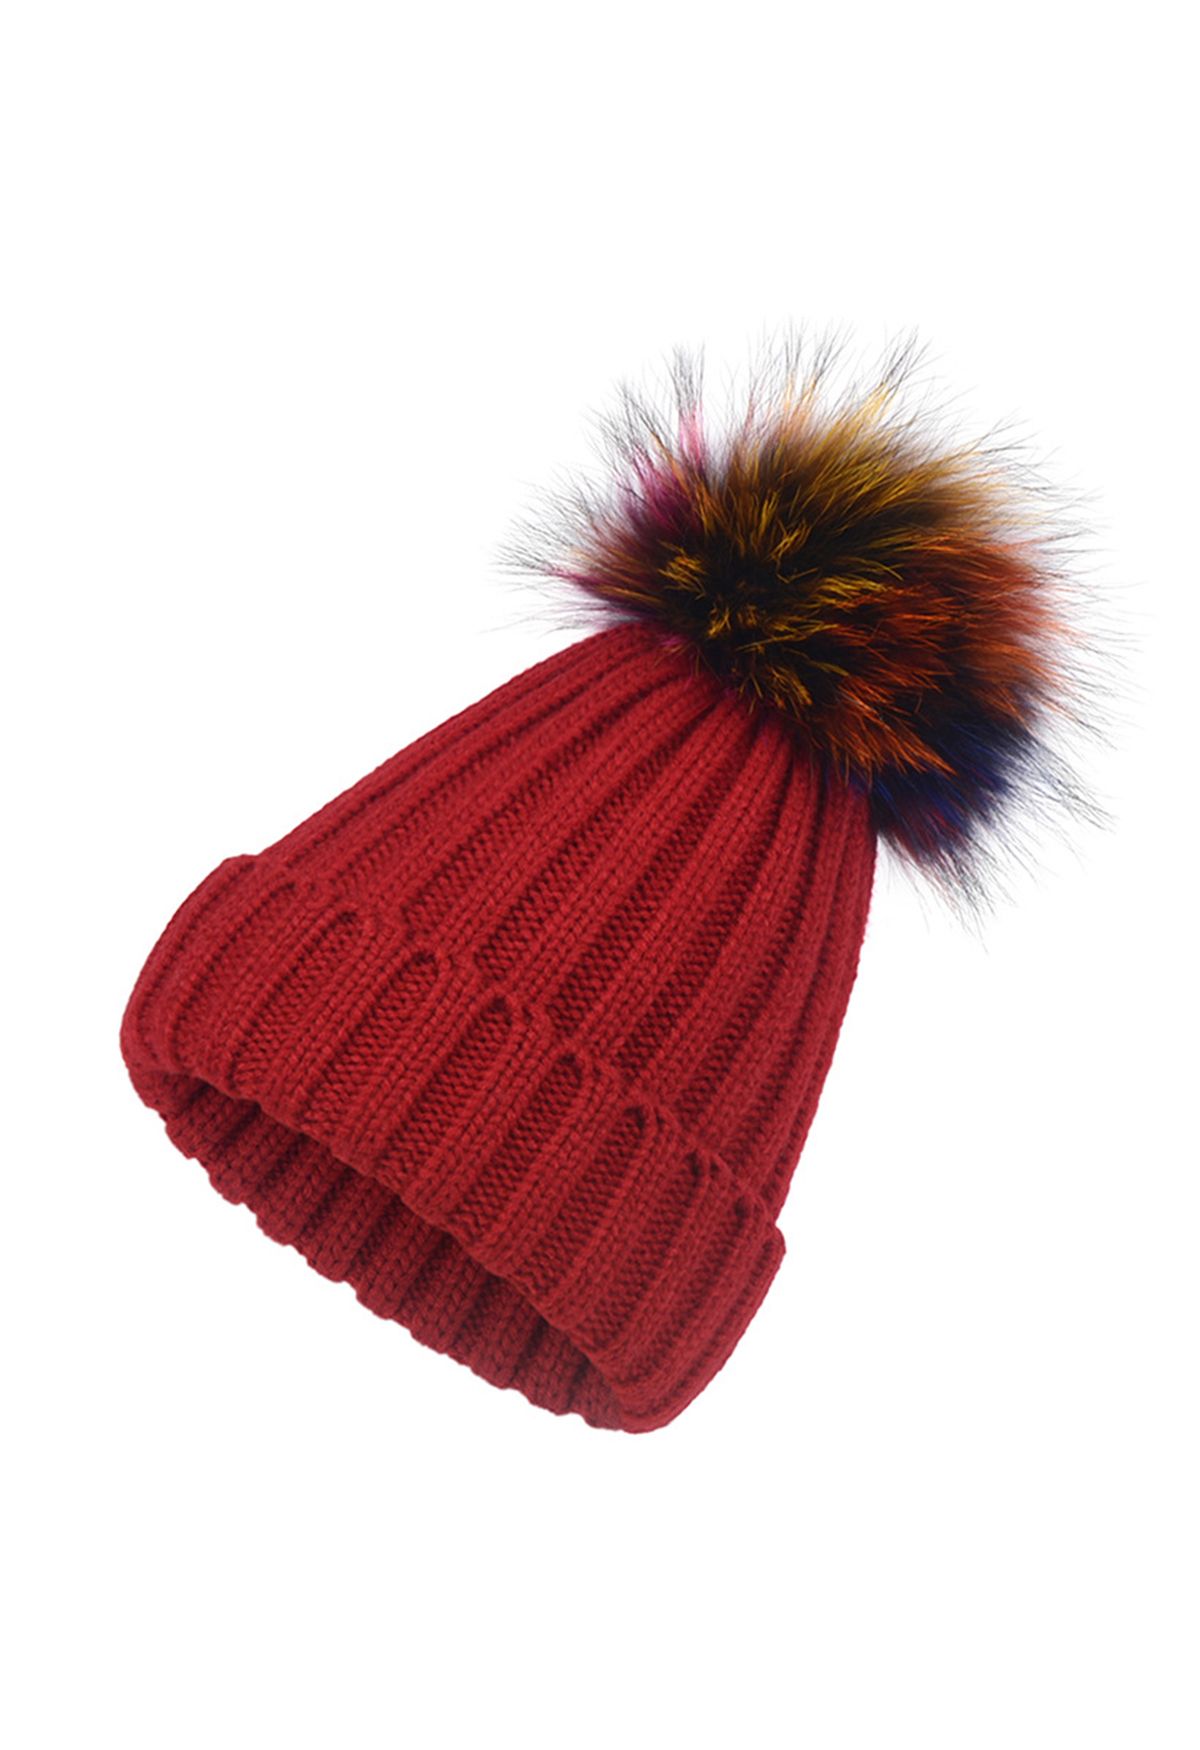 Colorful Pom-Pom Trim Beanie Hat in Red